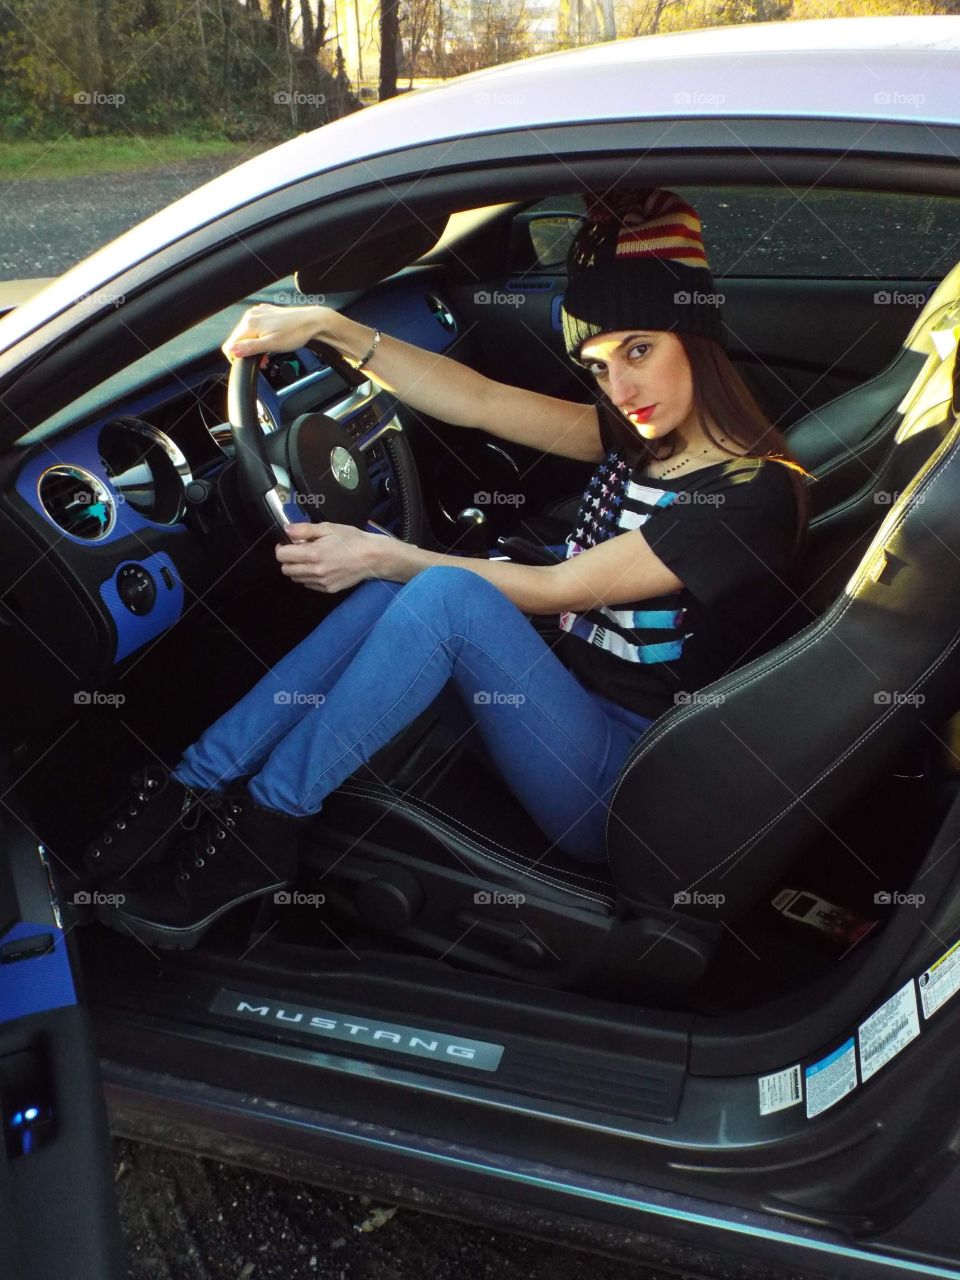 Anna inside a Mustang GT